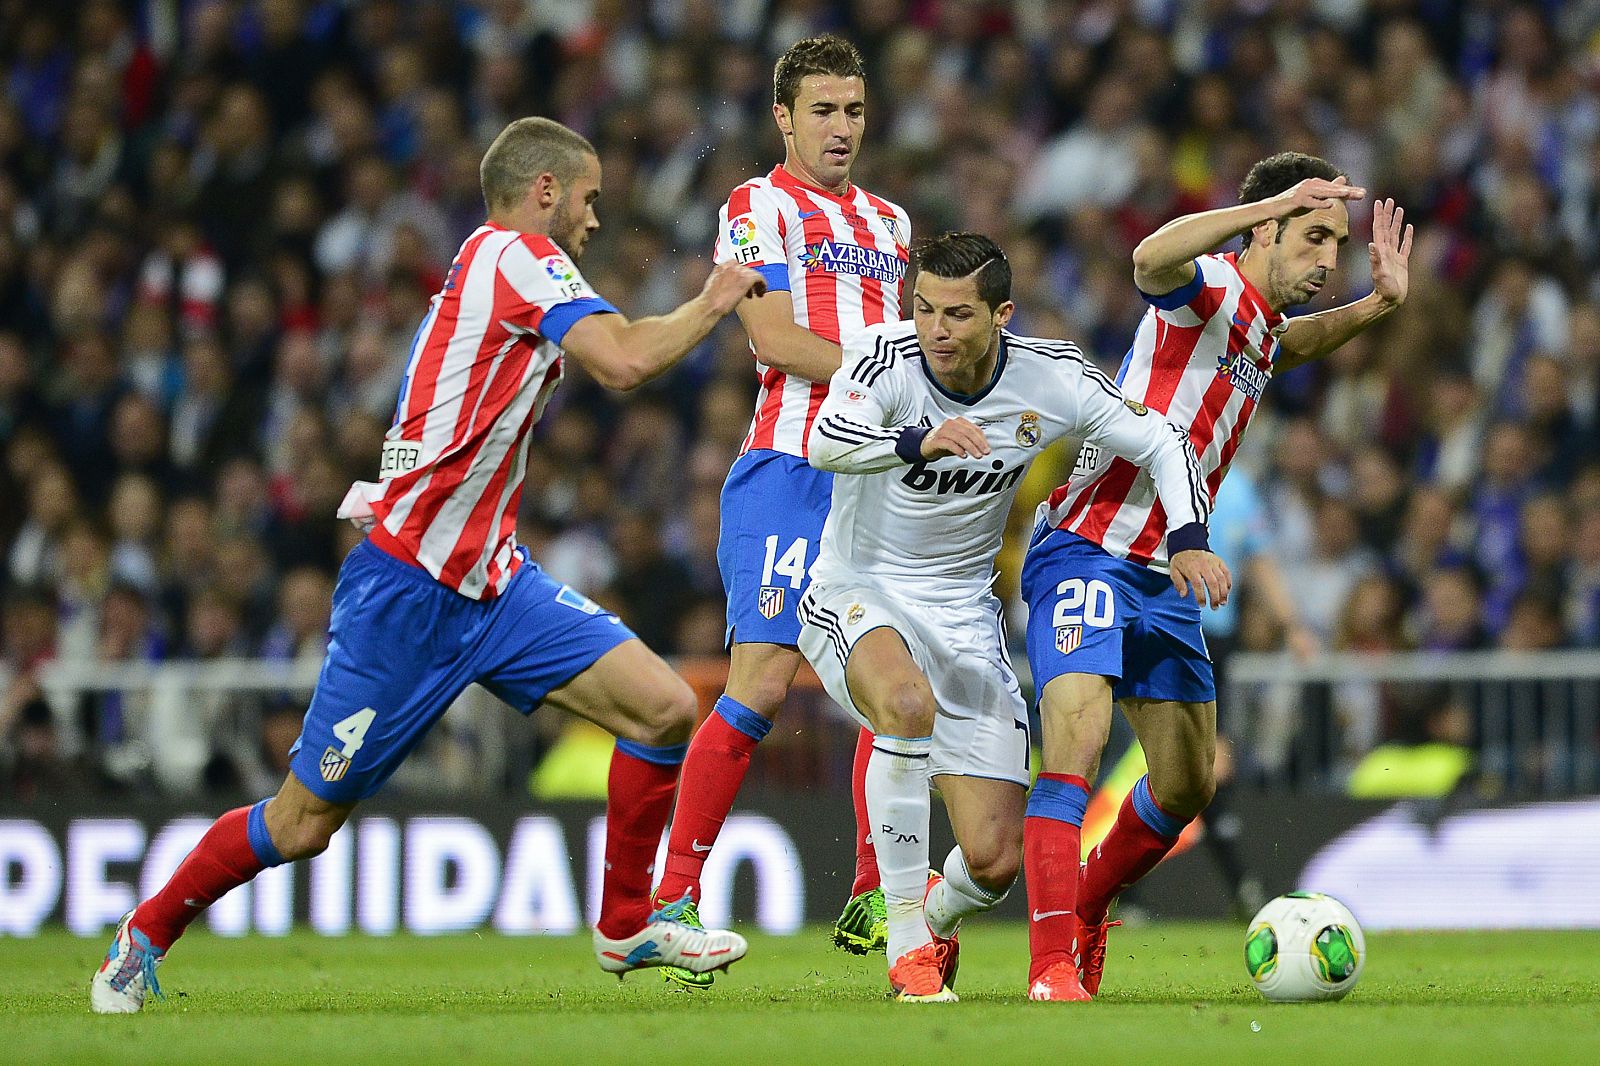 Tres seleccionables del Atlético, Mario Suárez, Gabi y Juanfran, pugnan por un balón con Ronaldo